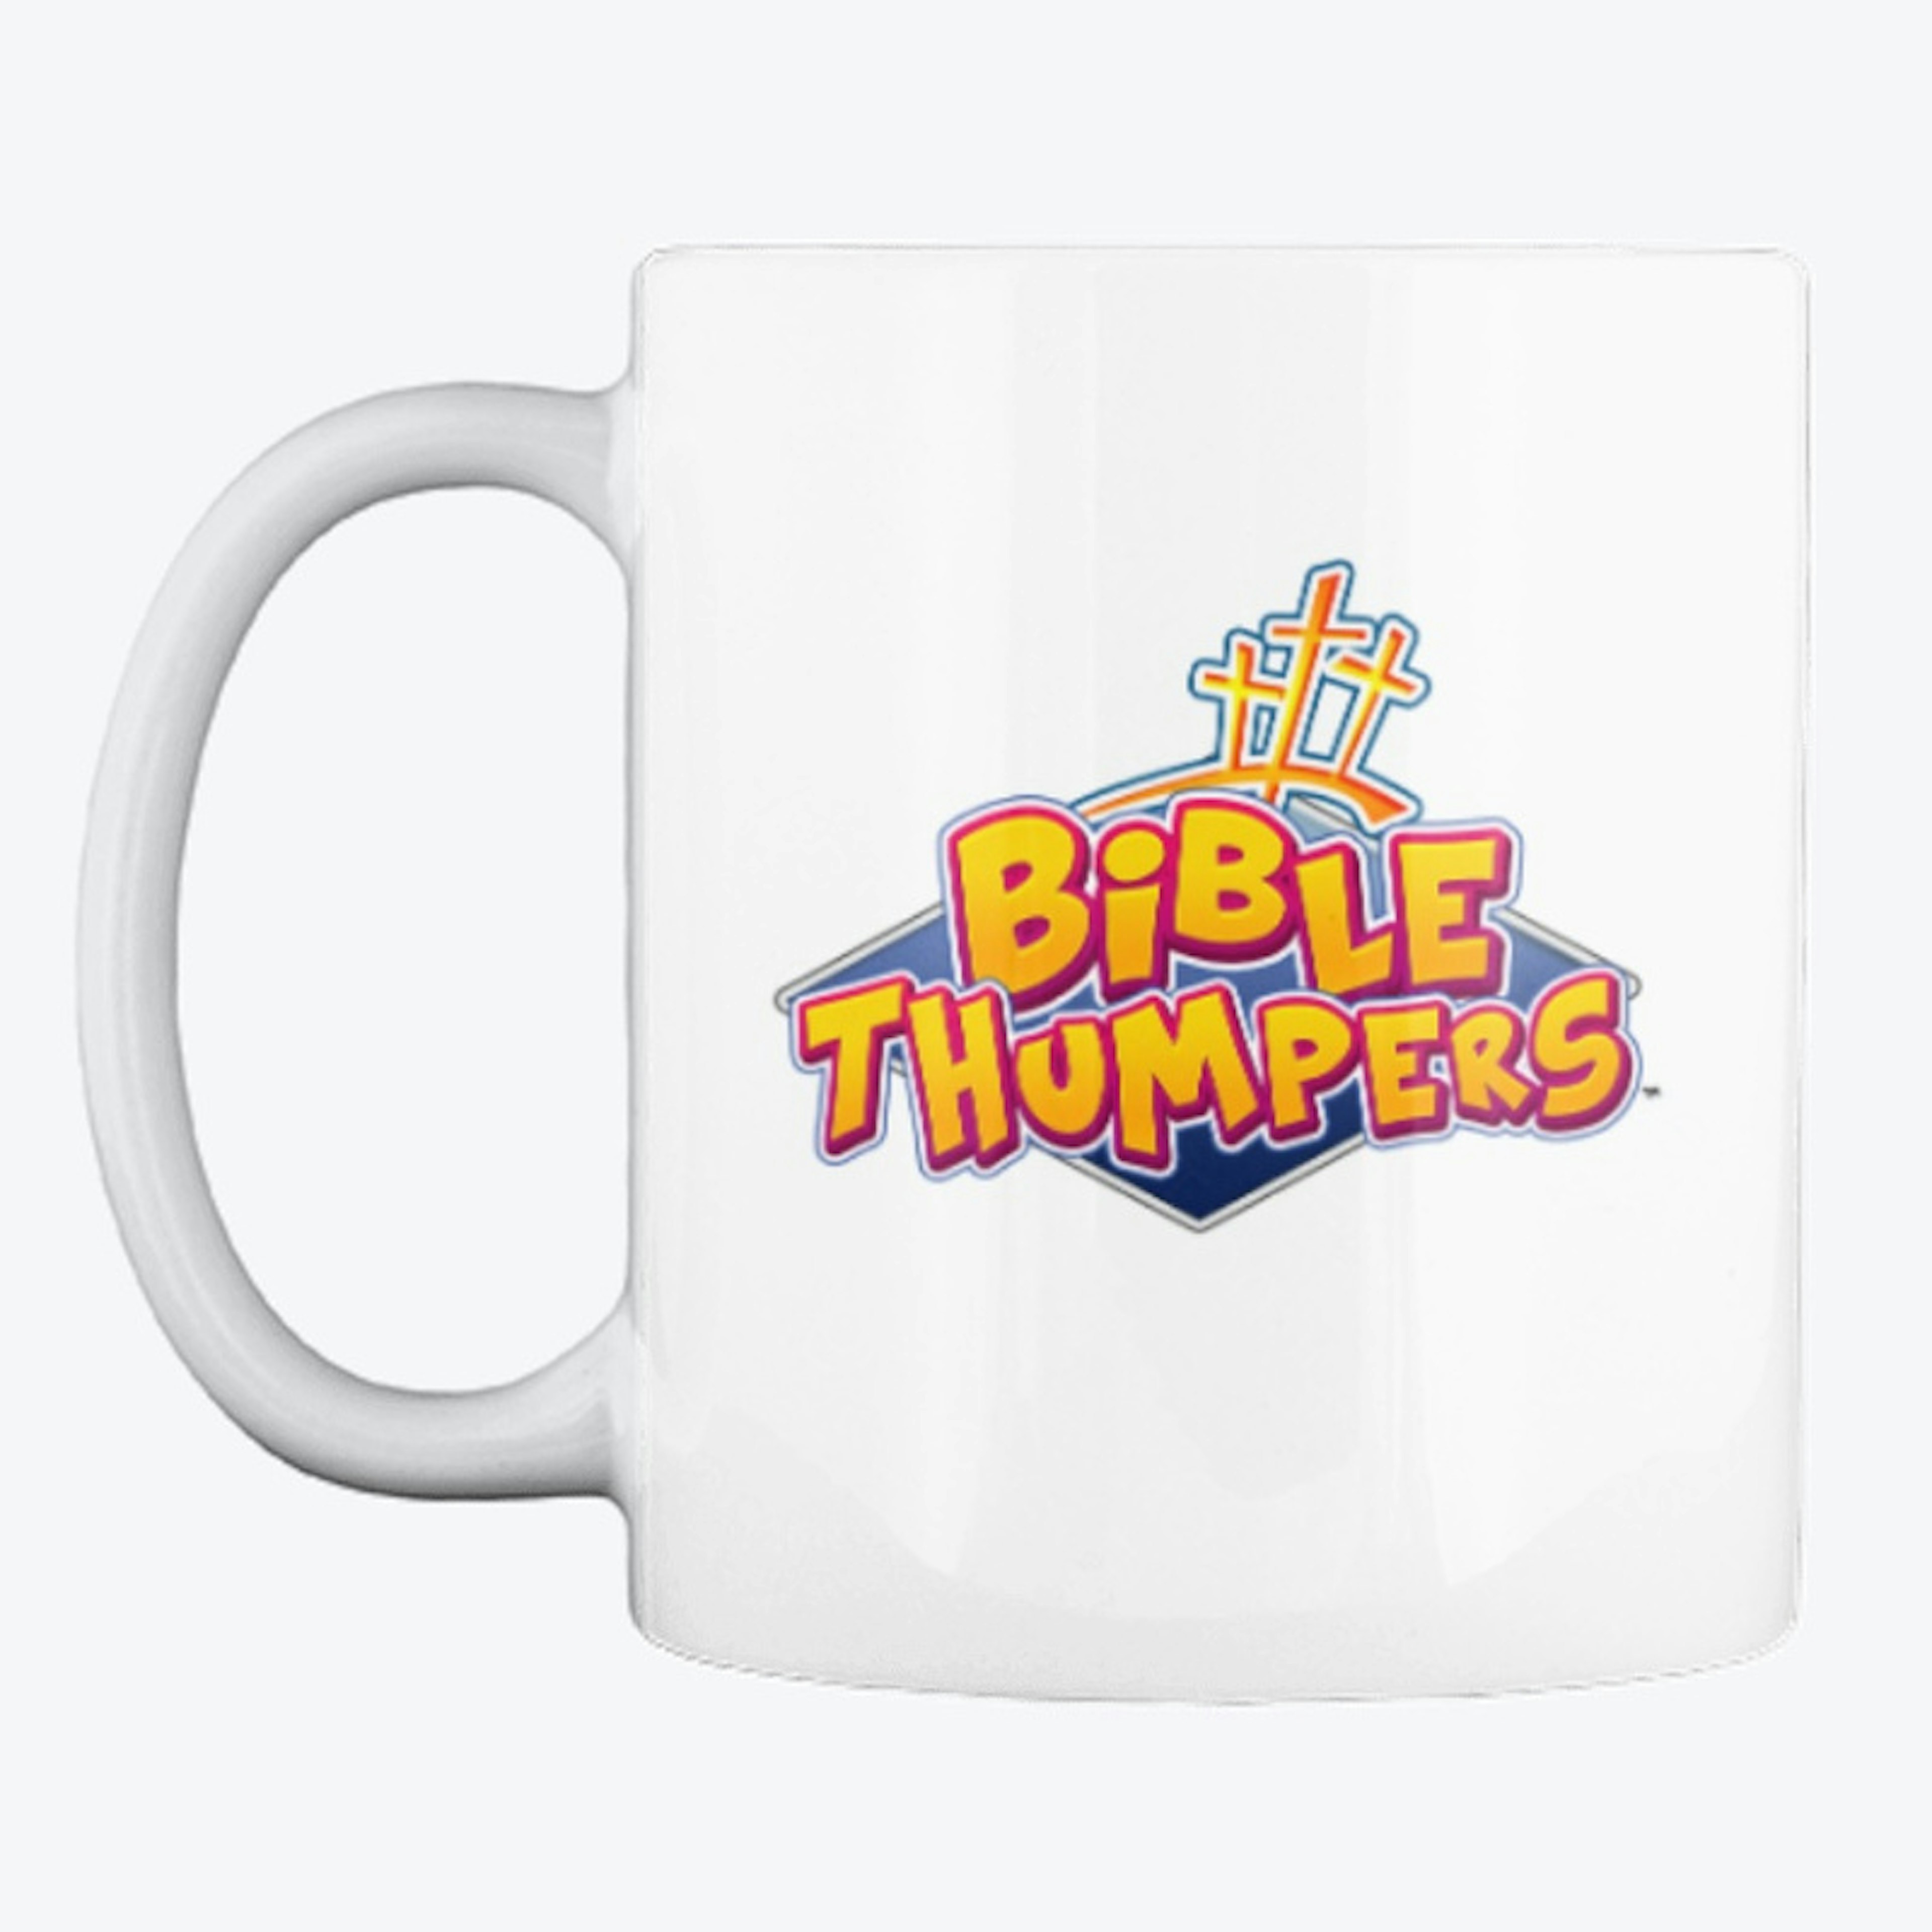 Bible Thumpers | Mug